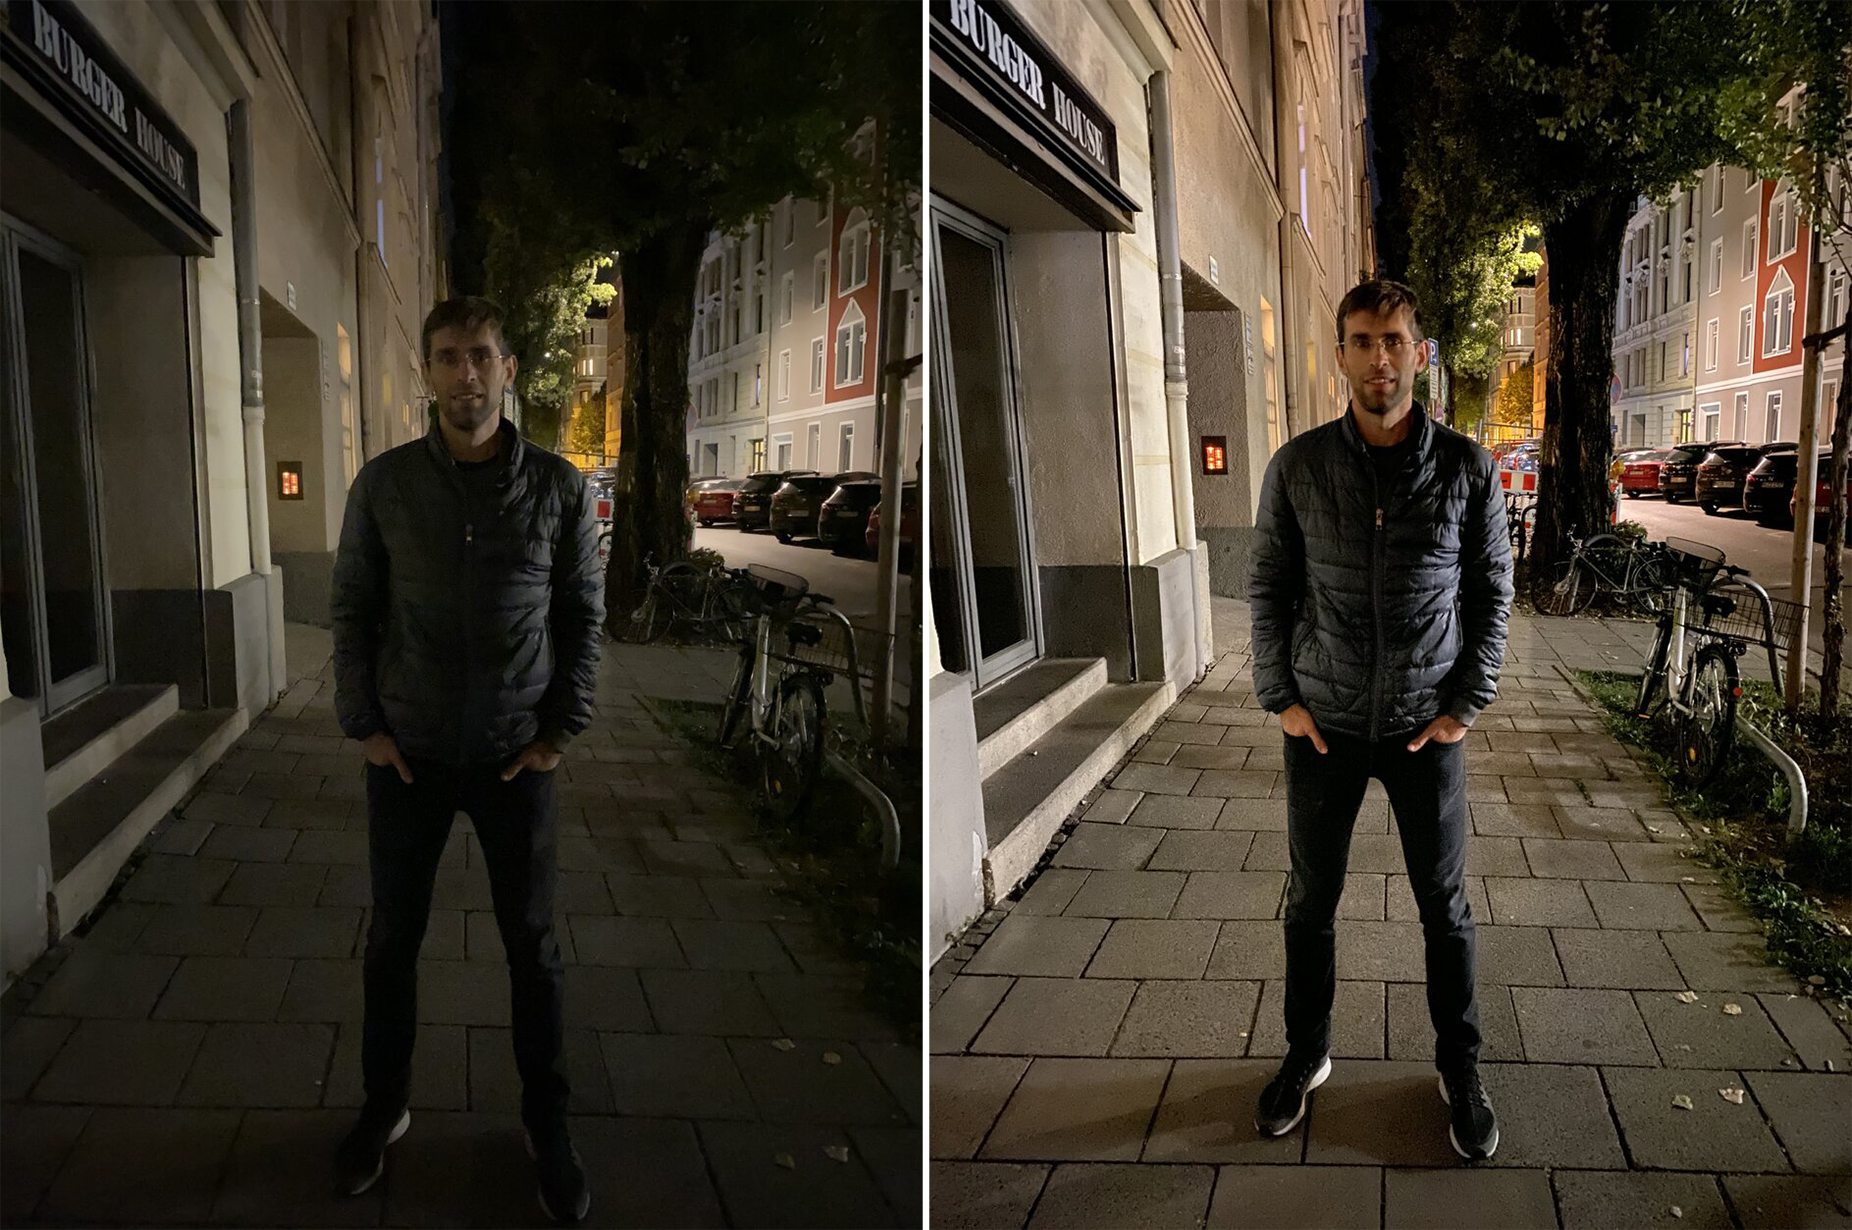 Chỉnh sửa ảnh đường phố ban đêm là một công việc đầy sáng tạo và mang lại hiệu quả đặc biệt. Với tay nghề chỉnh sửa chuyên nghiệp, bạn có thể tăng cường sự sống động và đồng thời giữ lại bản sắc riêng của từng bức ảnh.